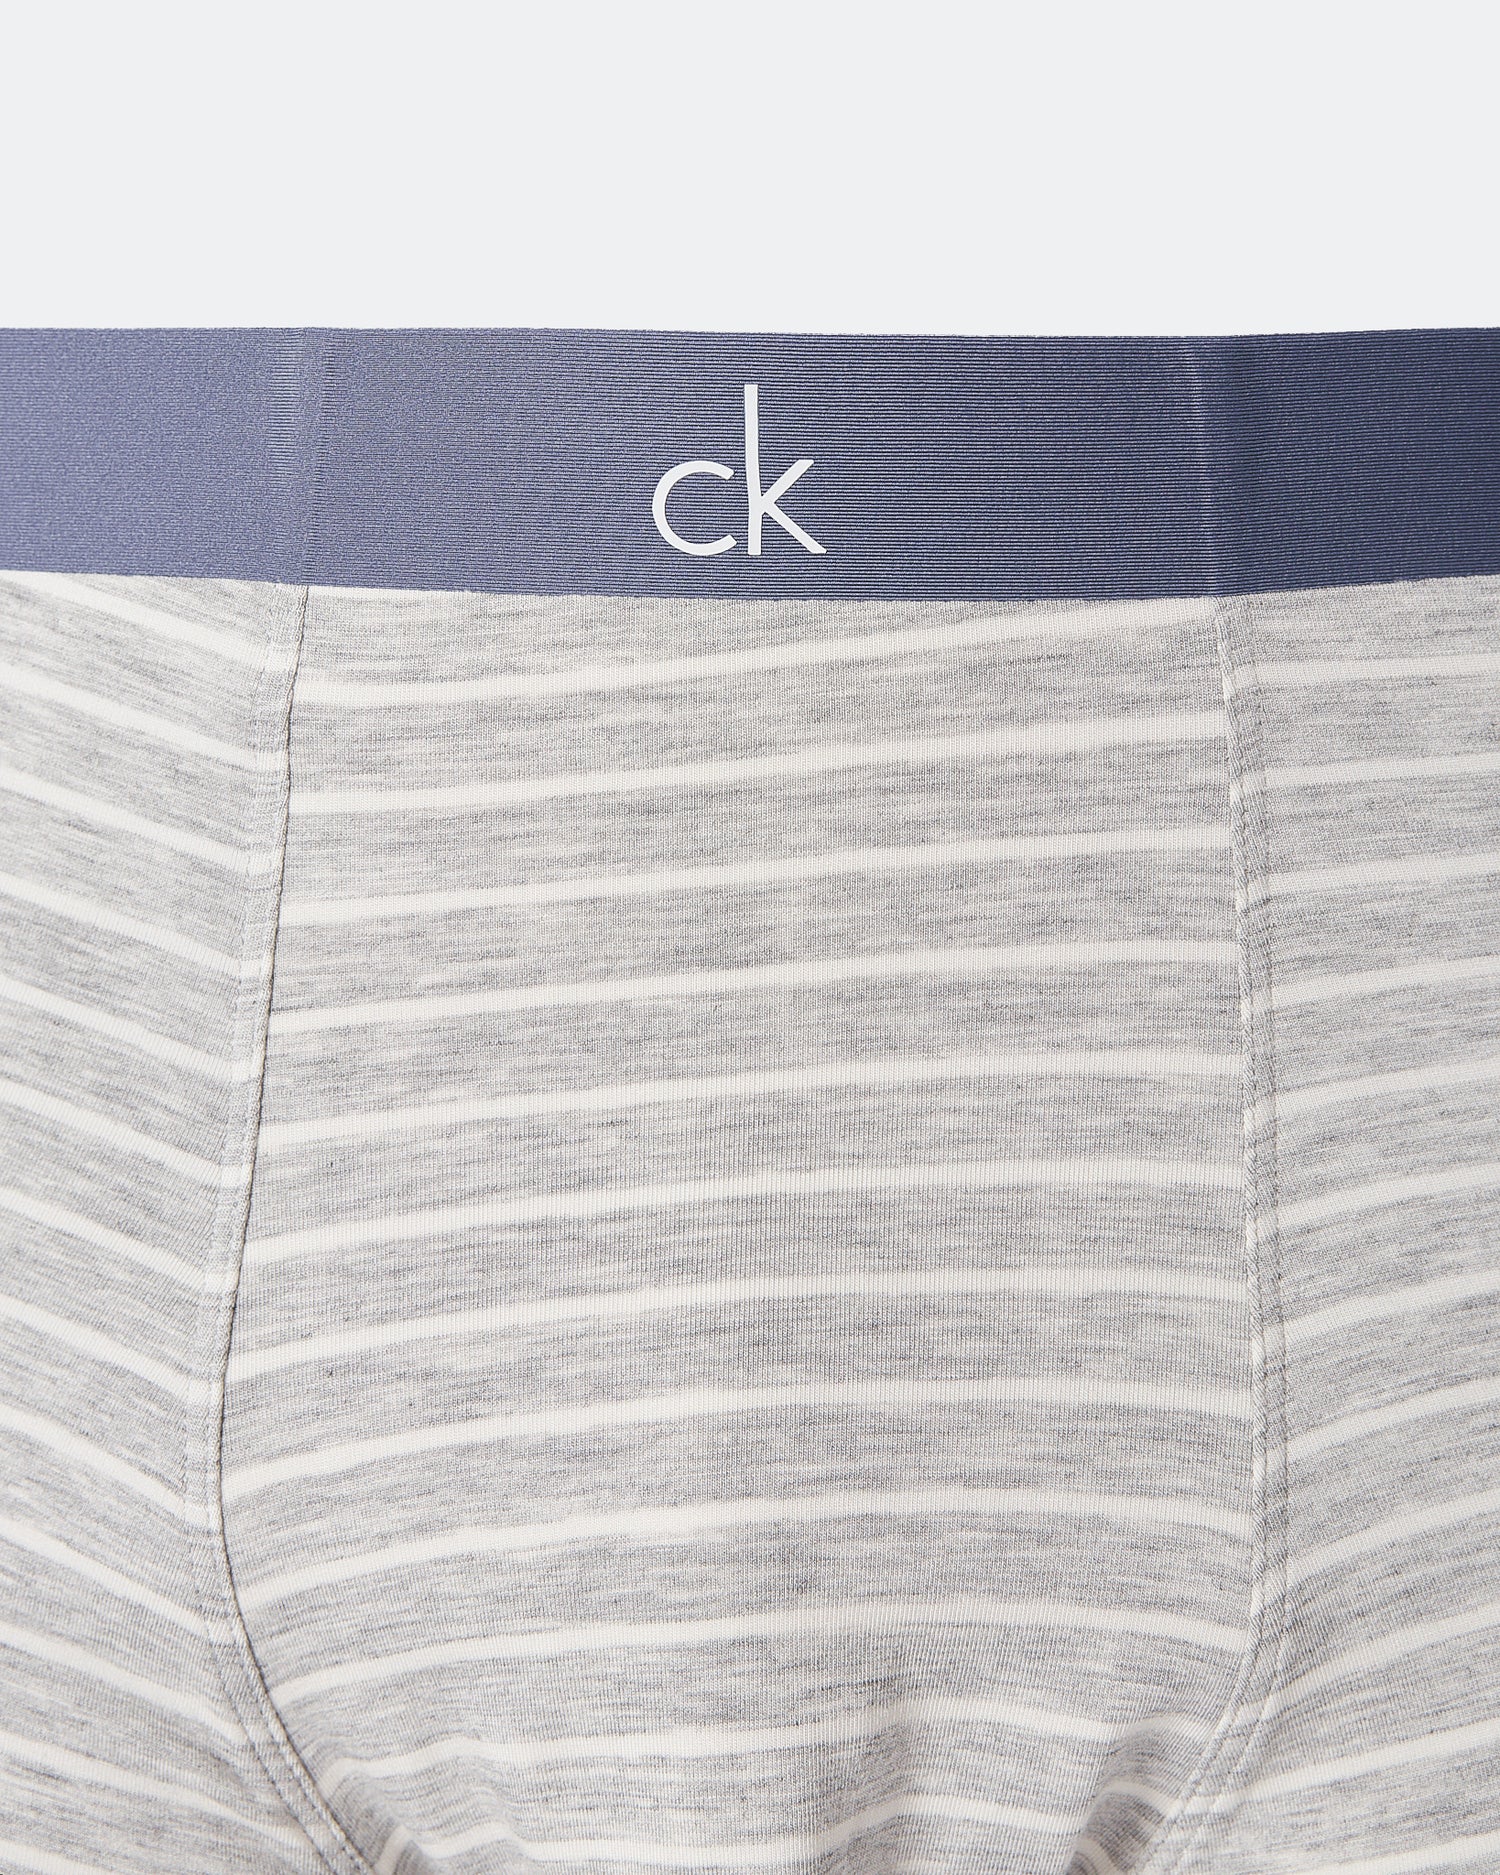 CK Striped Over Printed Men Grey Underwear 6.90